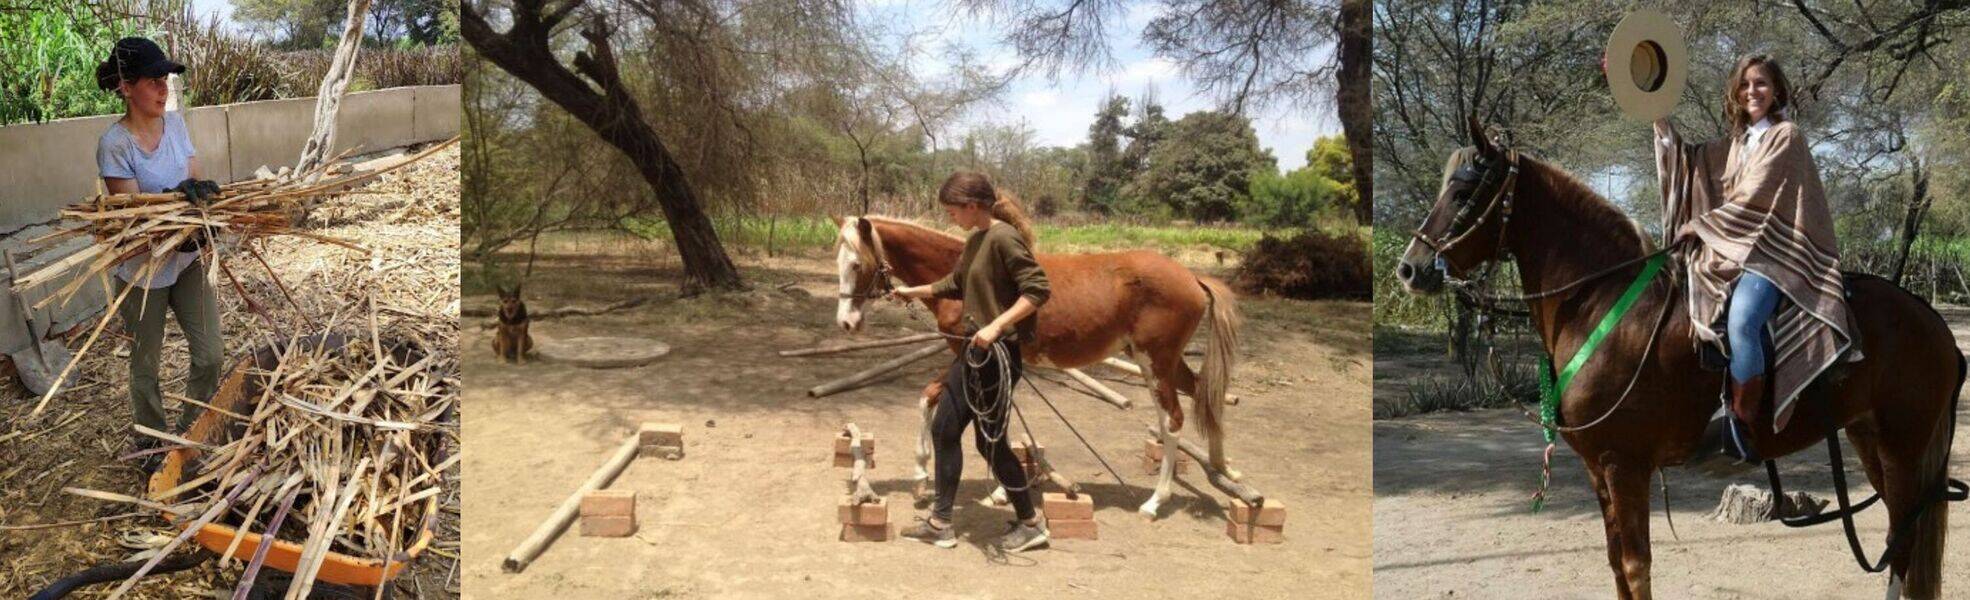 Freiwilligenarbeit auf der Pferdefarm in Peru